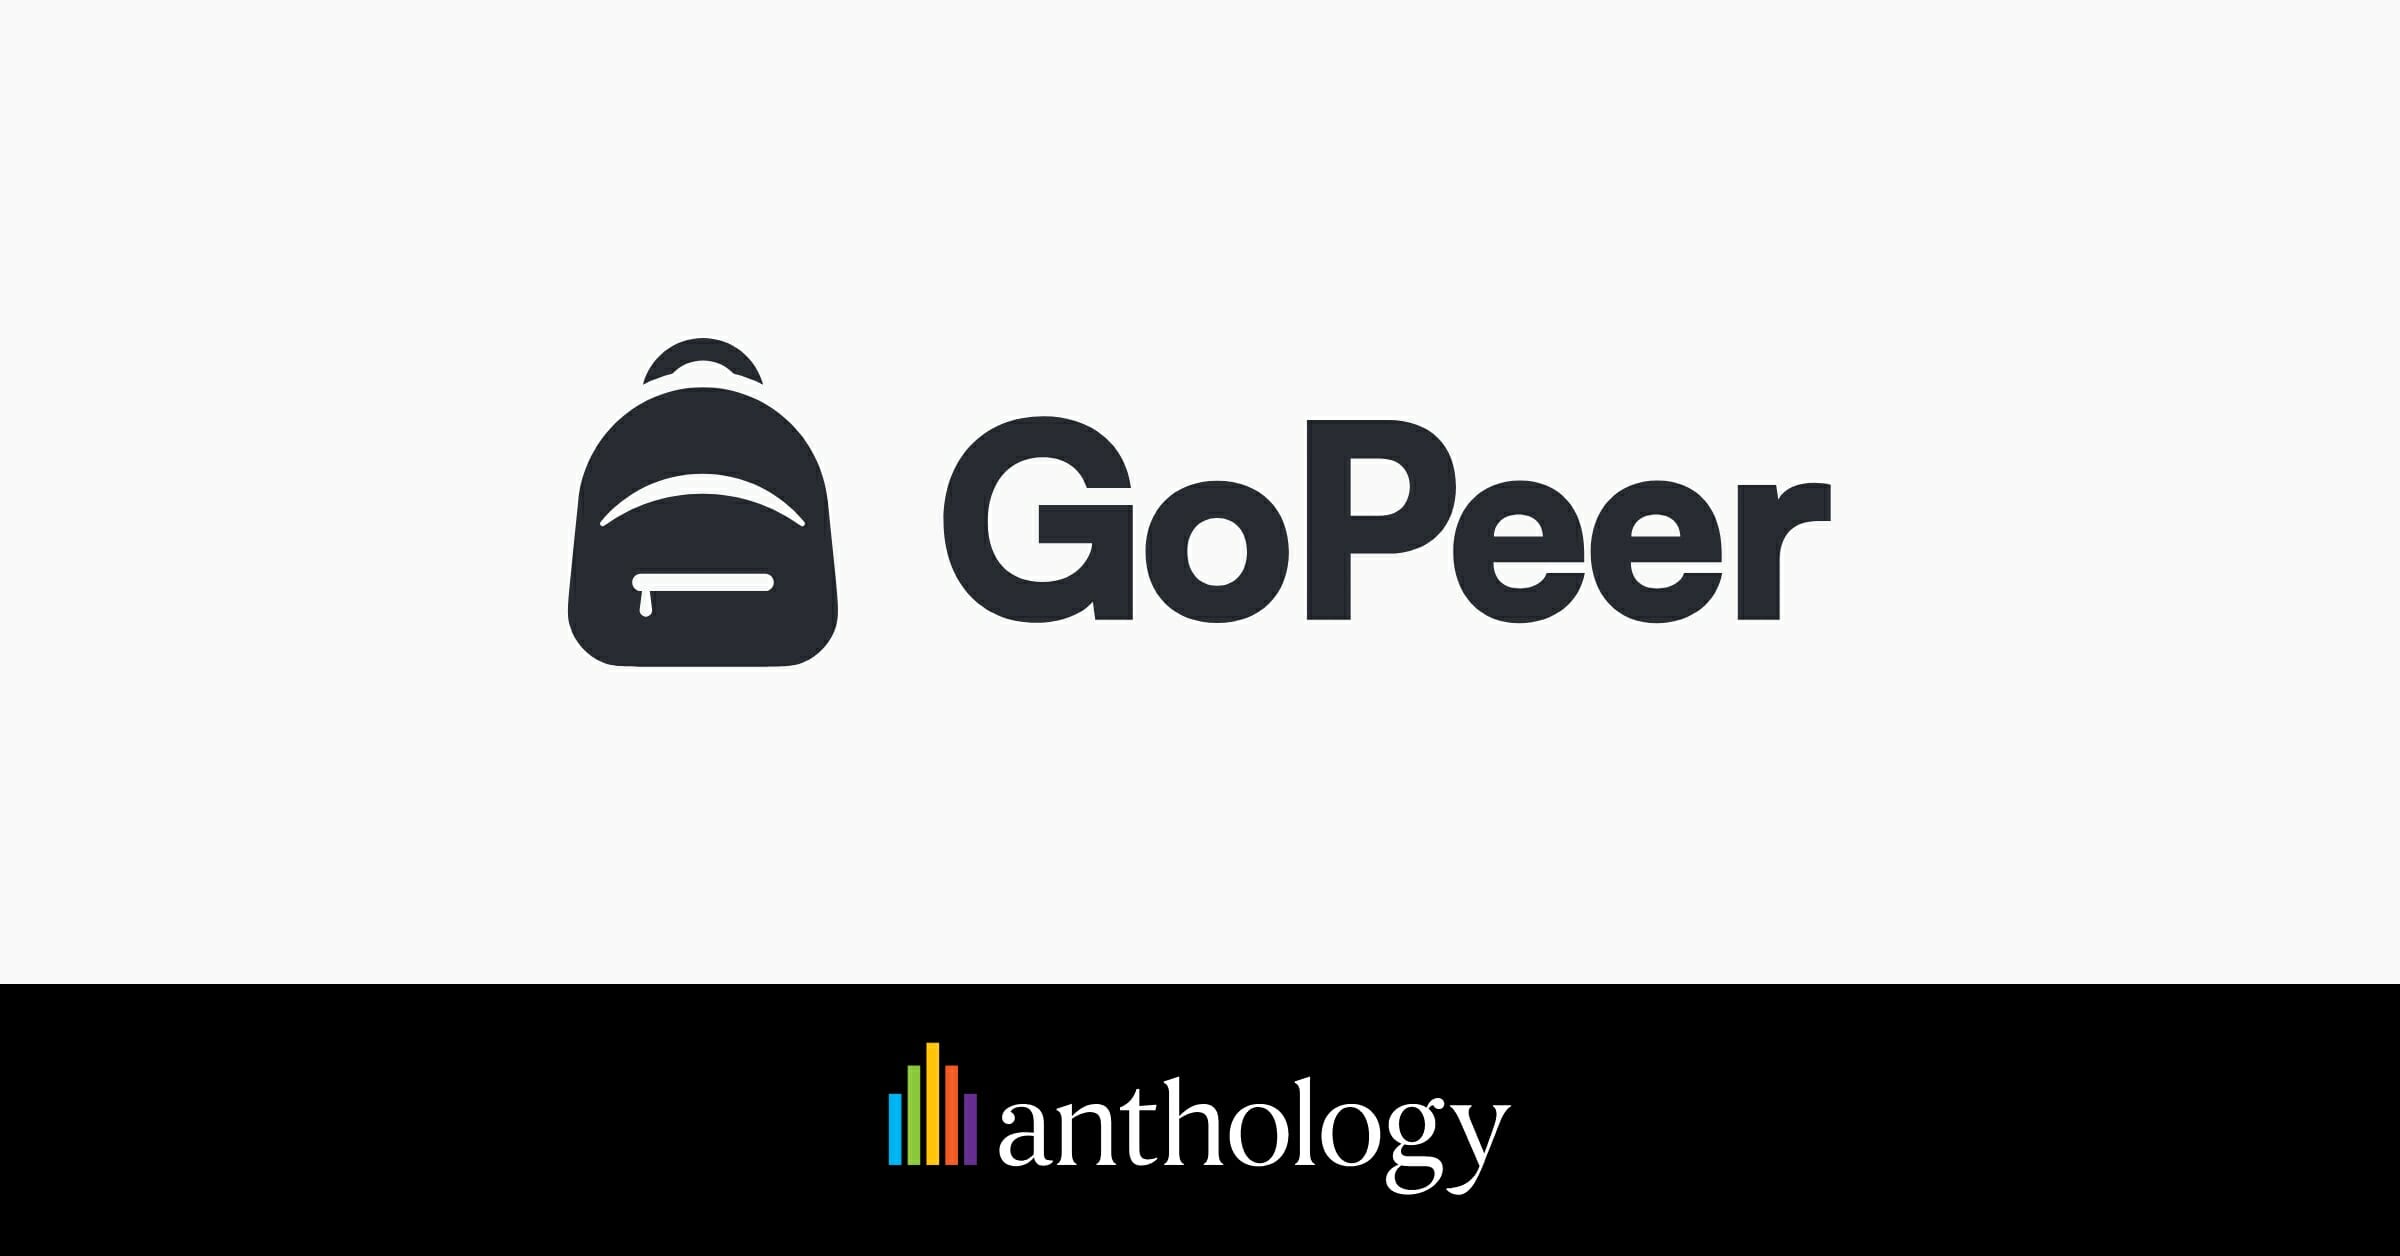 GoPeer logo lockup with the Anthology logo